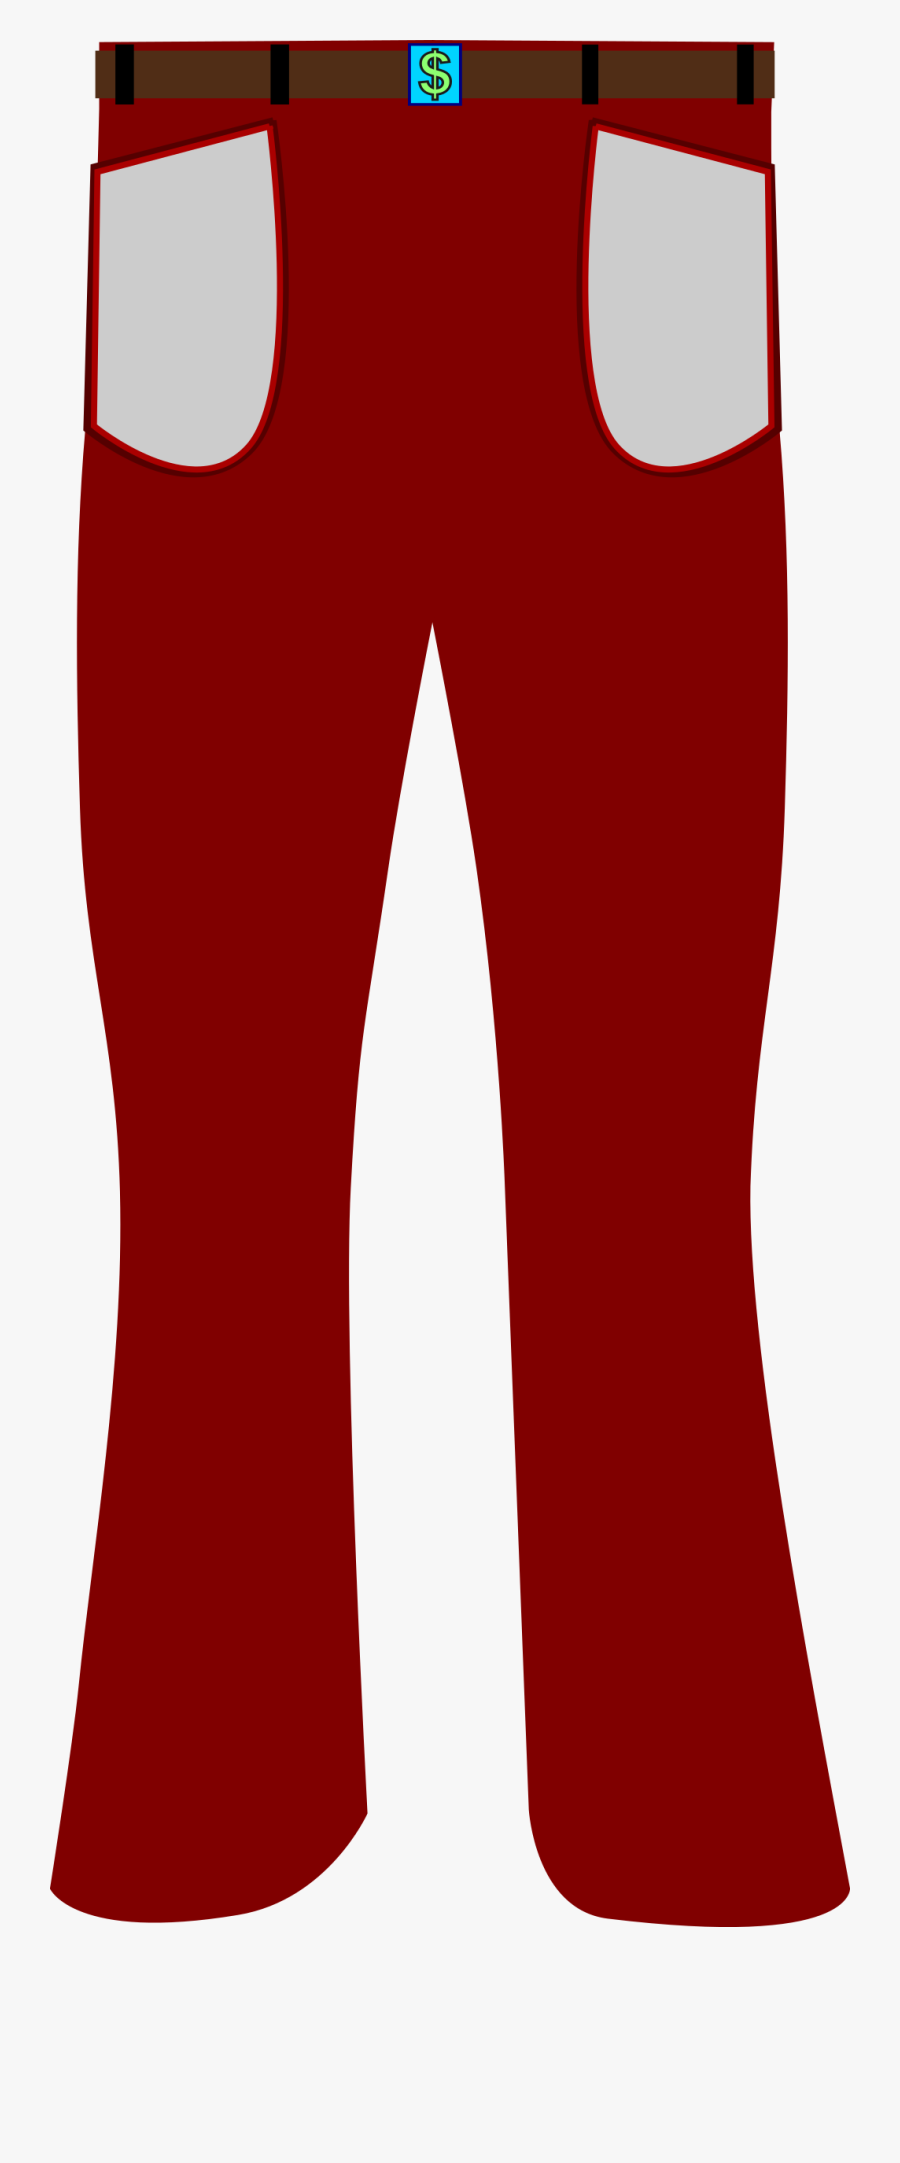 Transparent Pants Png - Red Pants Clipart, Transparent Clipart